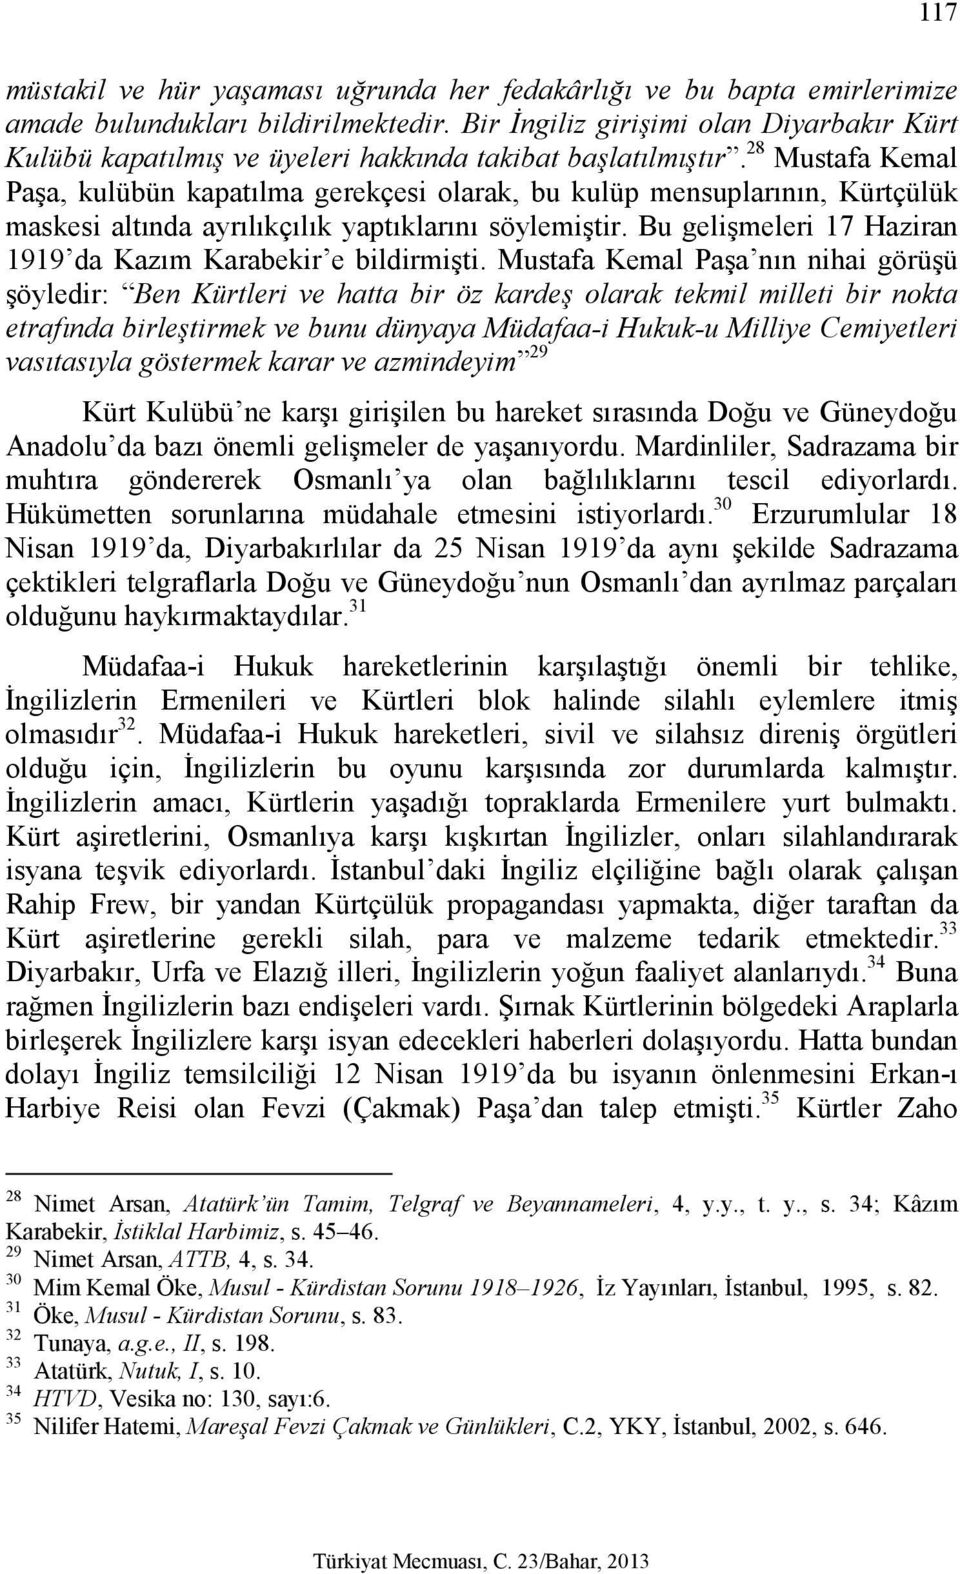 28 Mustafa Kemal Paşa, kulübün kapatılma gerekçesi olarak, bu kulüp mensuplarının, Kürtçülük maskesi altında ayrılıkçılık yaptıklarını söylemiştir.